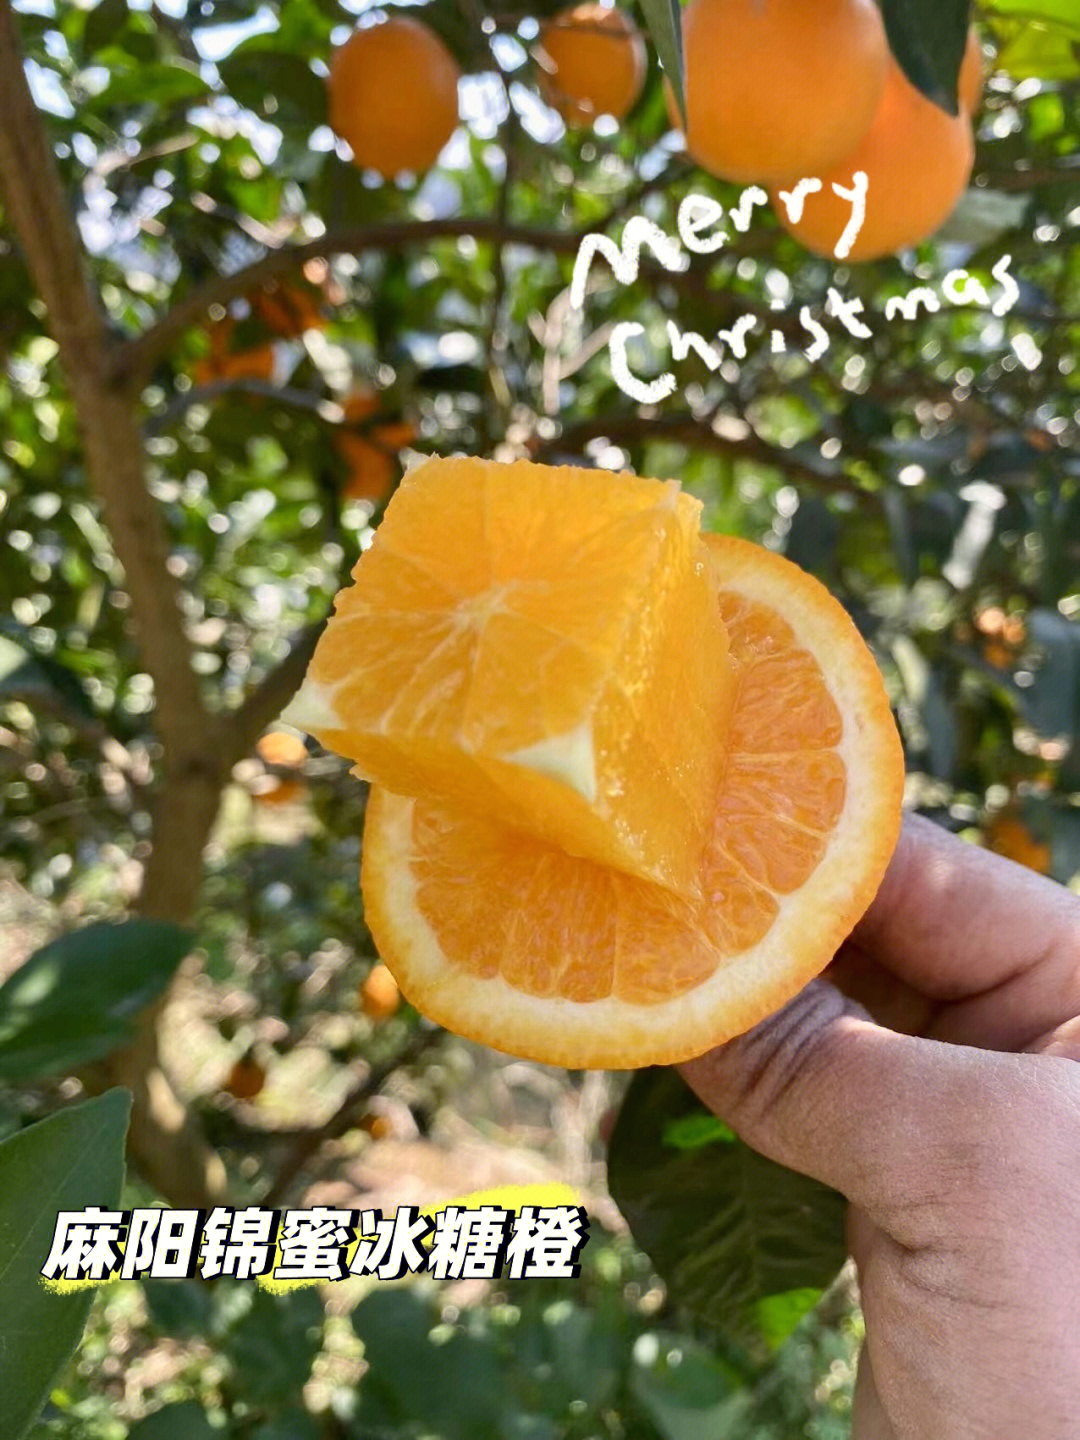 麻阳锦蜜冰糖橙简介图片